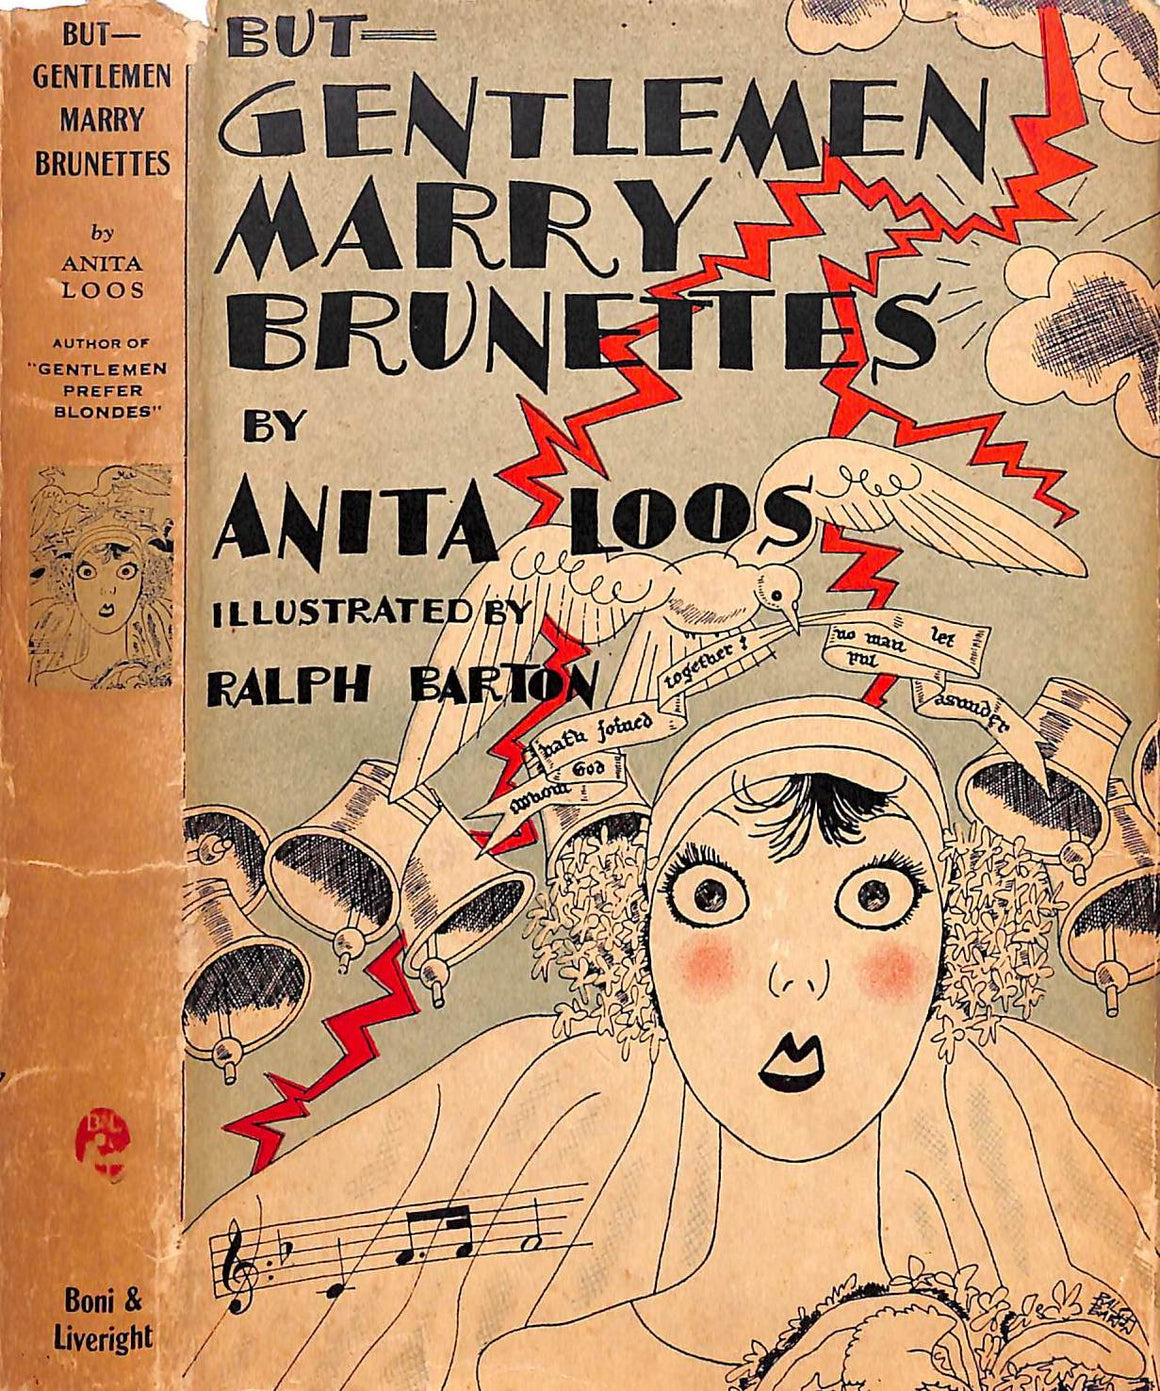 "But Gentlemen Marry Brunettes" 1928 LOOS, Anita